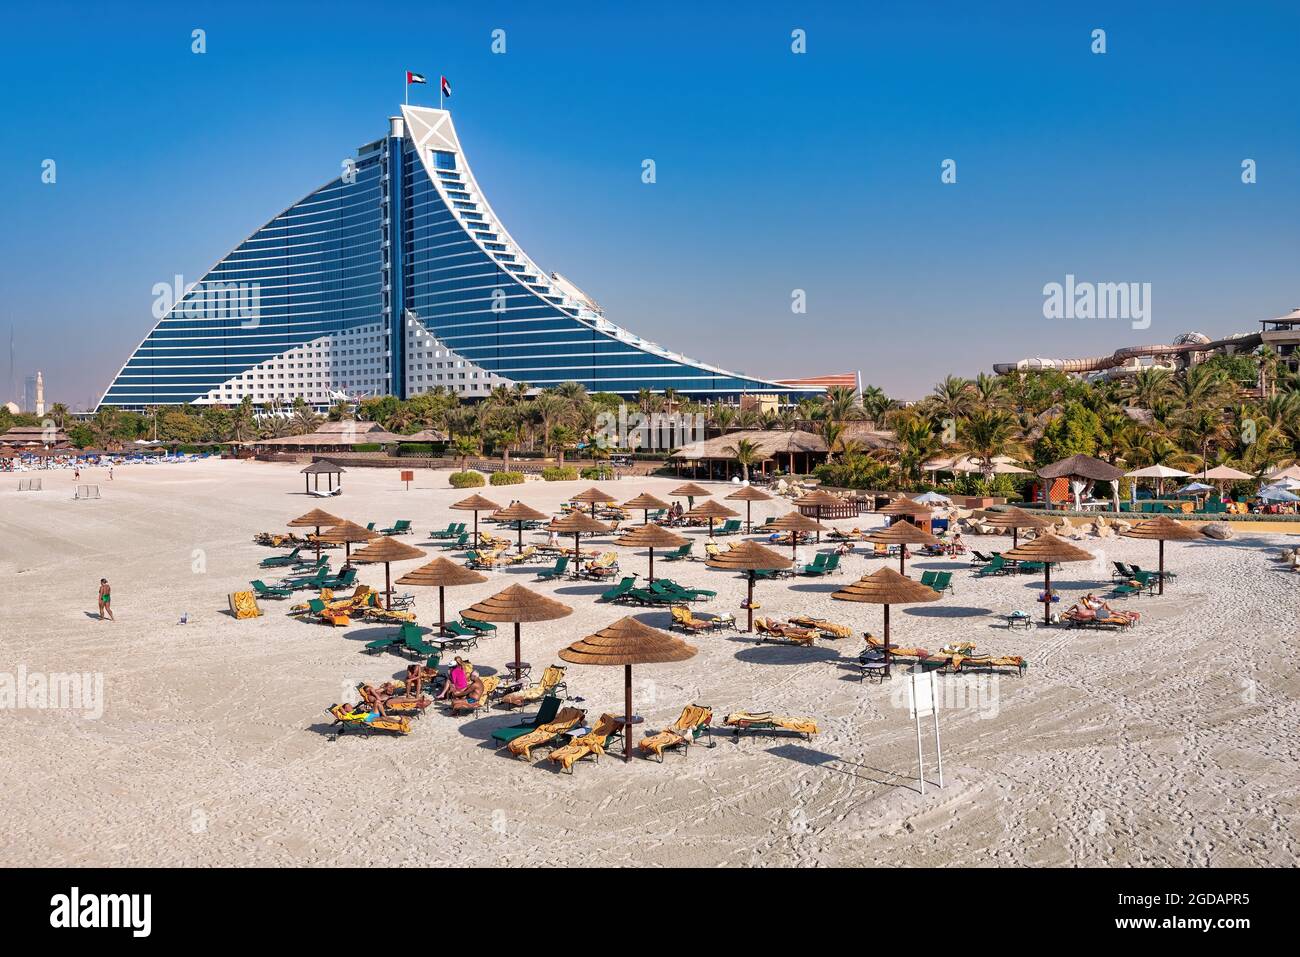 Dubai, Emirati Arabi Uniti - 08 gennaio 2012: Vista del Jumeirah Beach Hotel con la sua spiaggia privata. Questo hotel e' uno dei punti di riferimento di Dubai Foto Stock